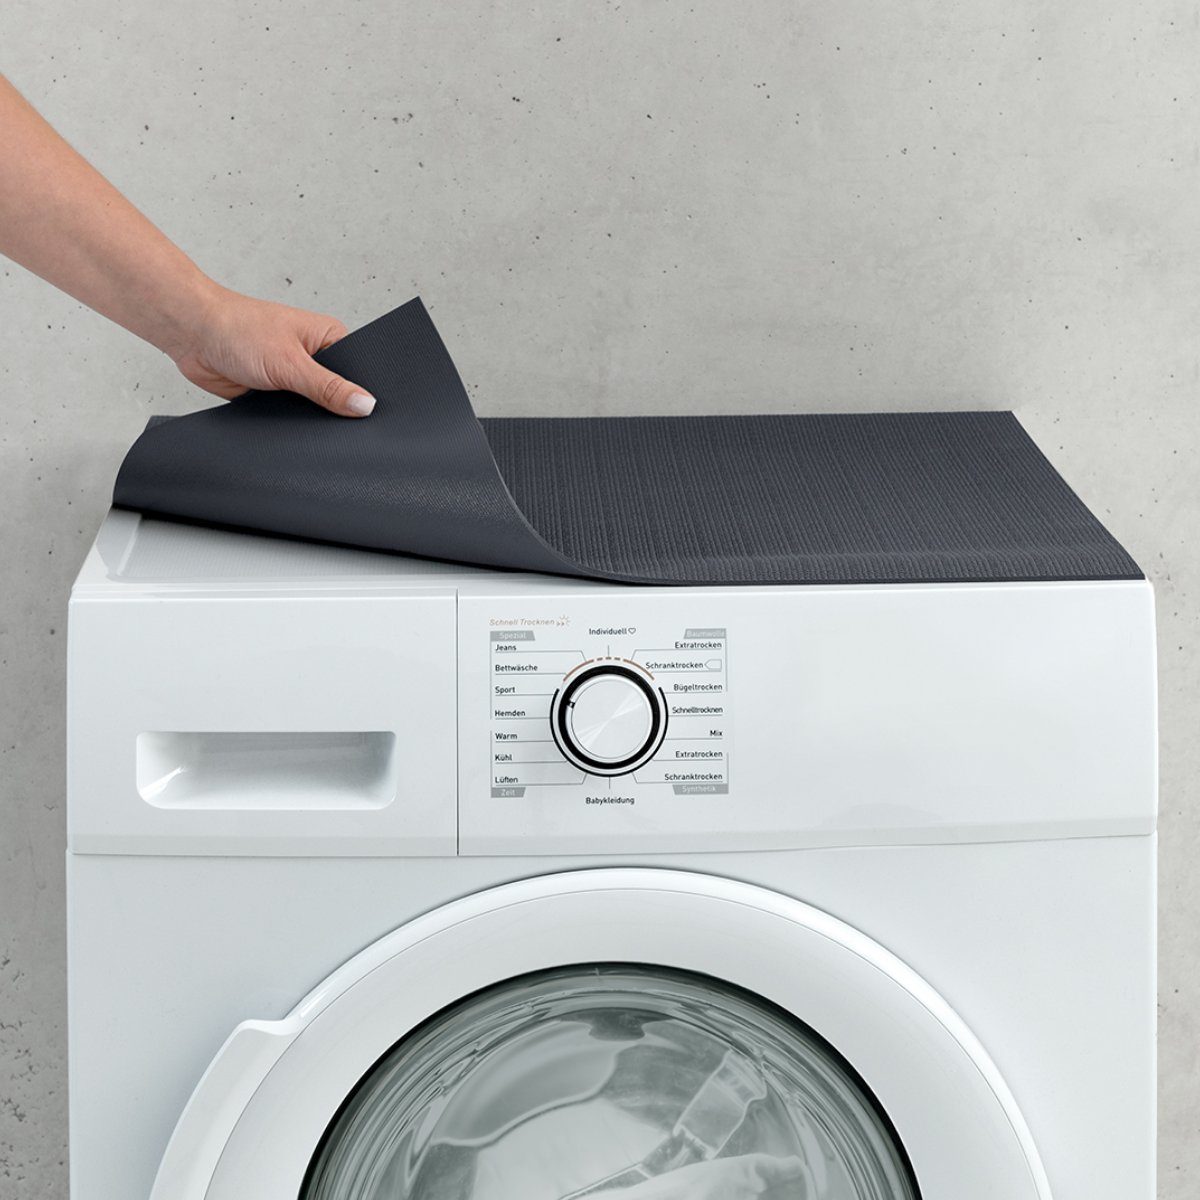 matches21 HOME & HOBBY Antirutschmatte Waschmaschinenauflage rutschfest zuschneidbar schwarz 60 cm, Waschmaschinenabdeckung als Abdeckung für Waschmaschine und Trockner